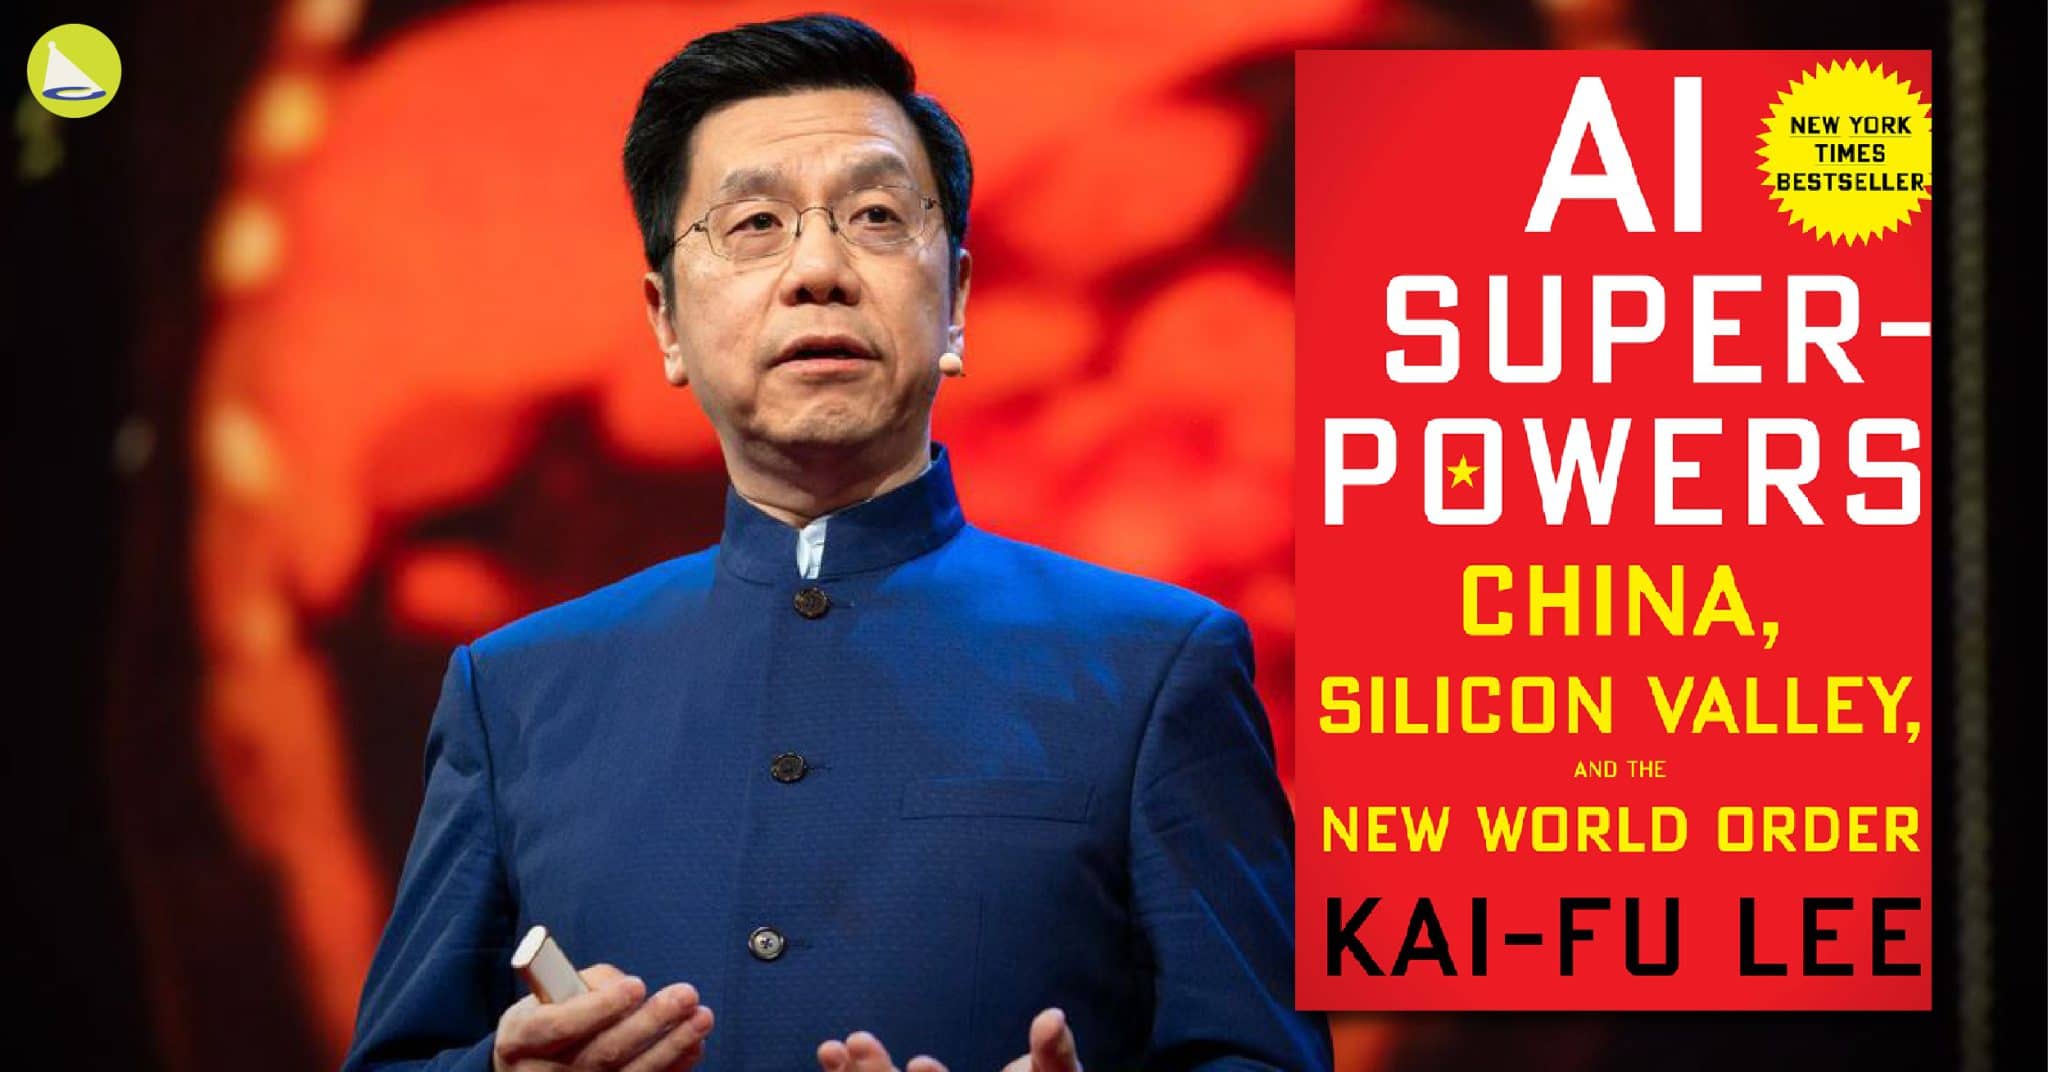 Kai-Fu Lee: ผู้ค้นพบหนทางอยู่ร่วมกันของมนุษย์กับ AI